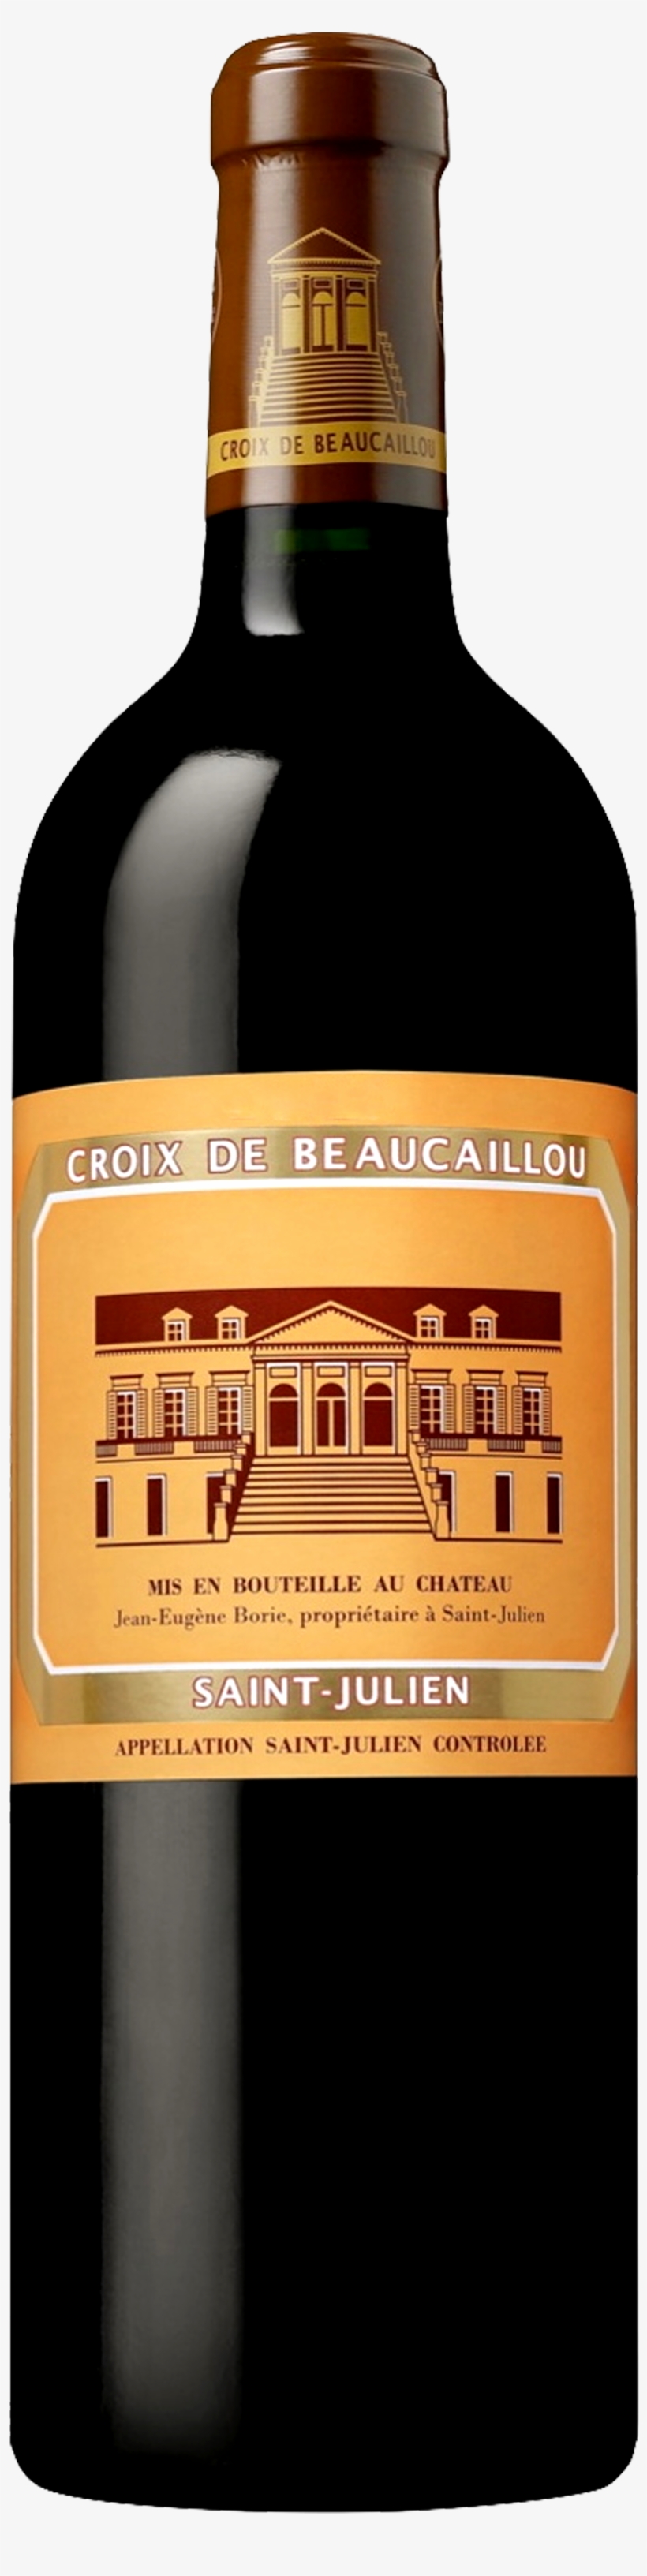 Image Of Product La Croix De Beaucaillou, St Julien - Château Ducru Beaucaillou Croix De Beaucaillou, transparent png #3100696